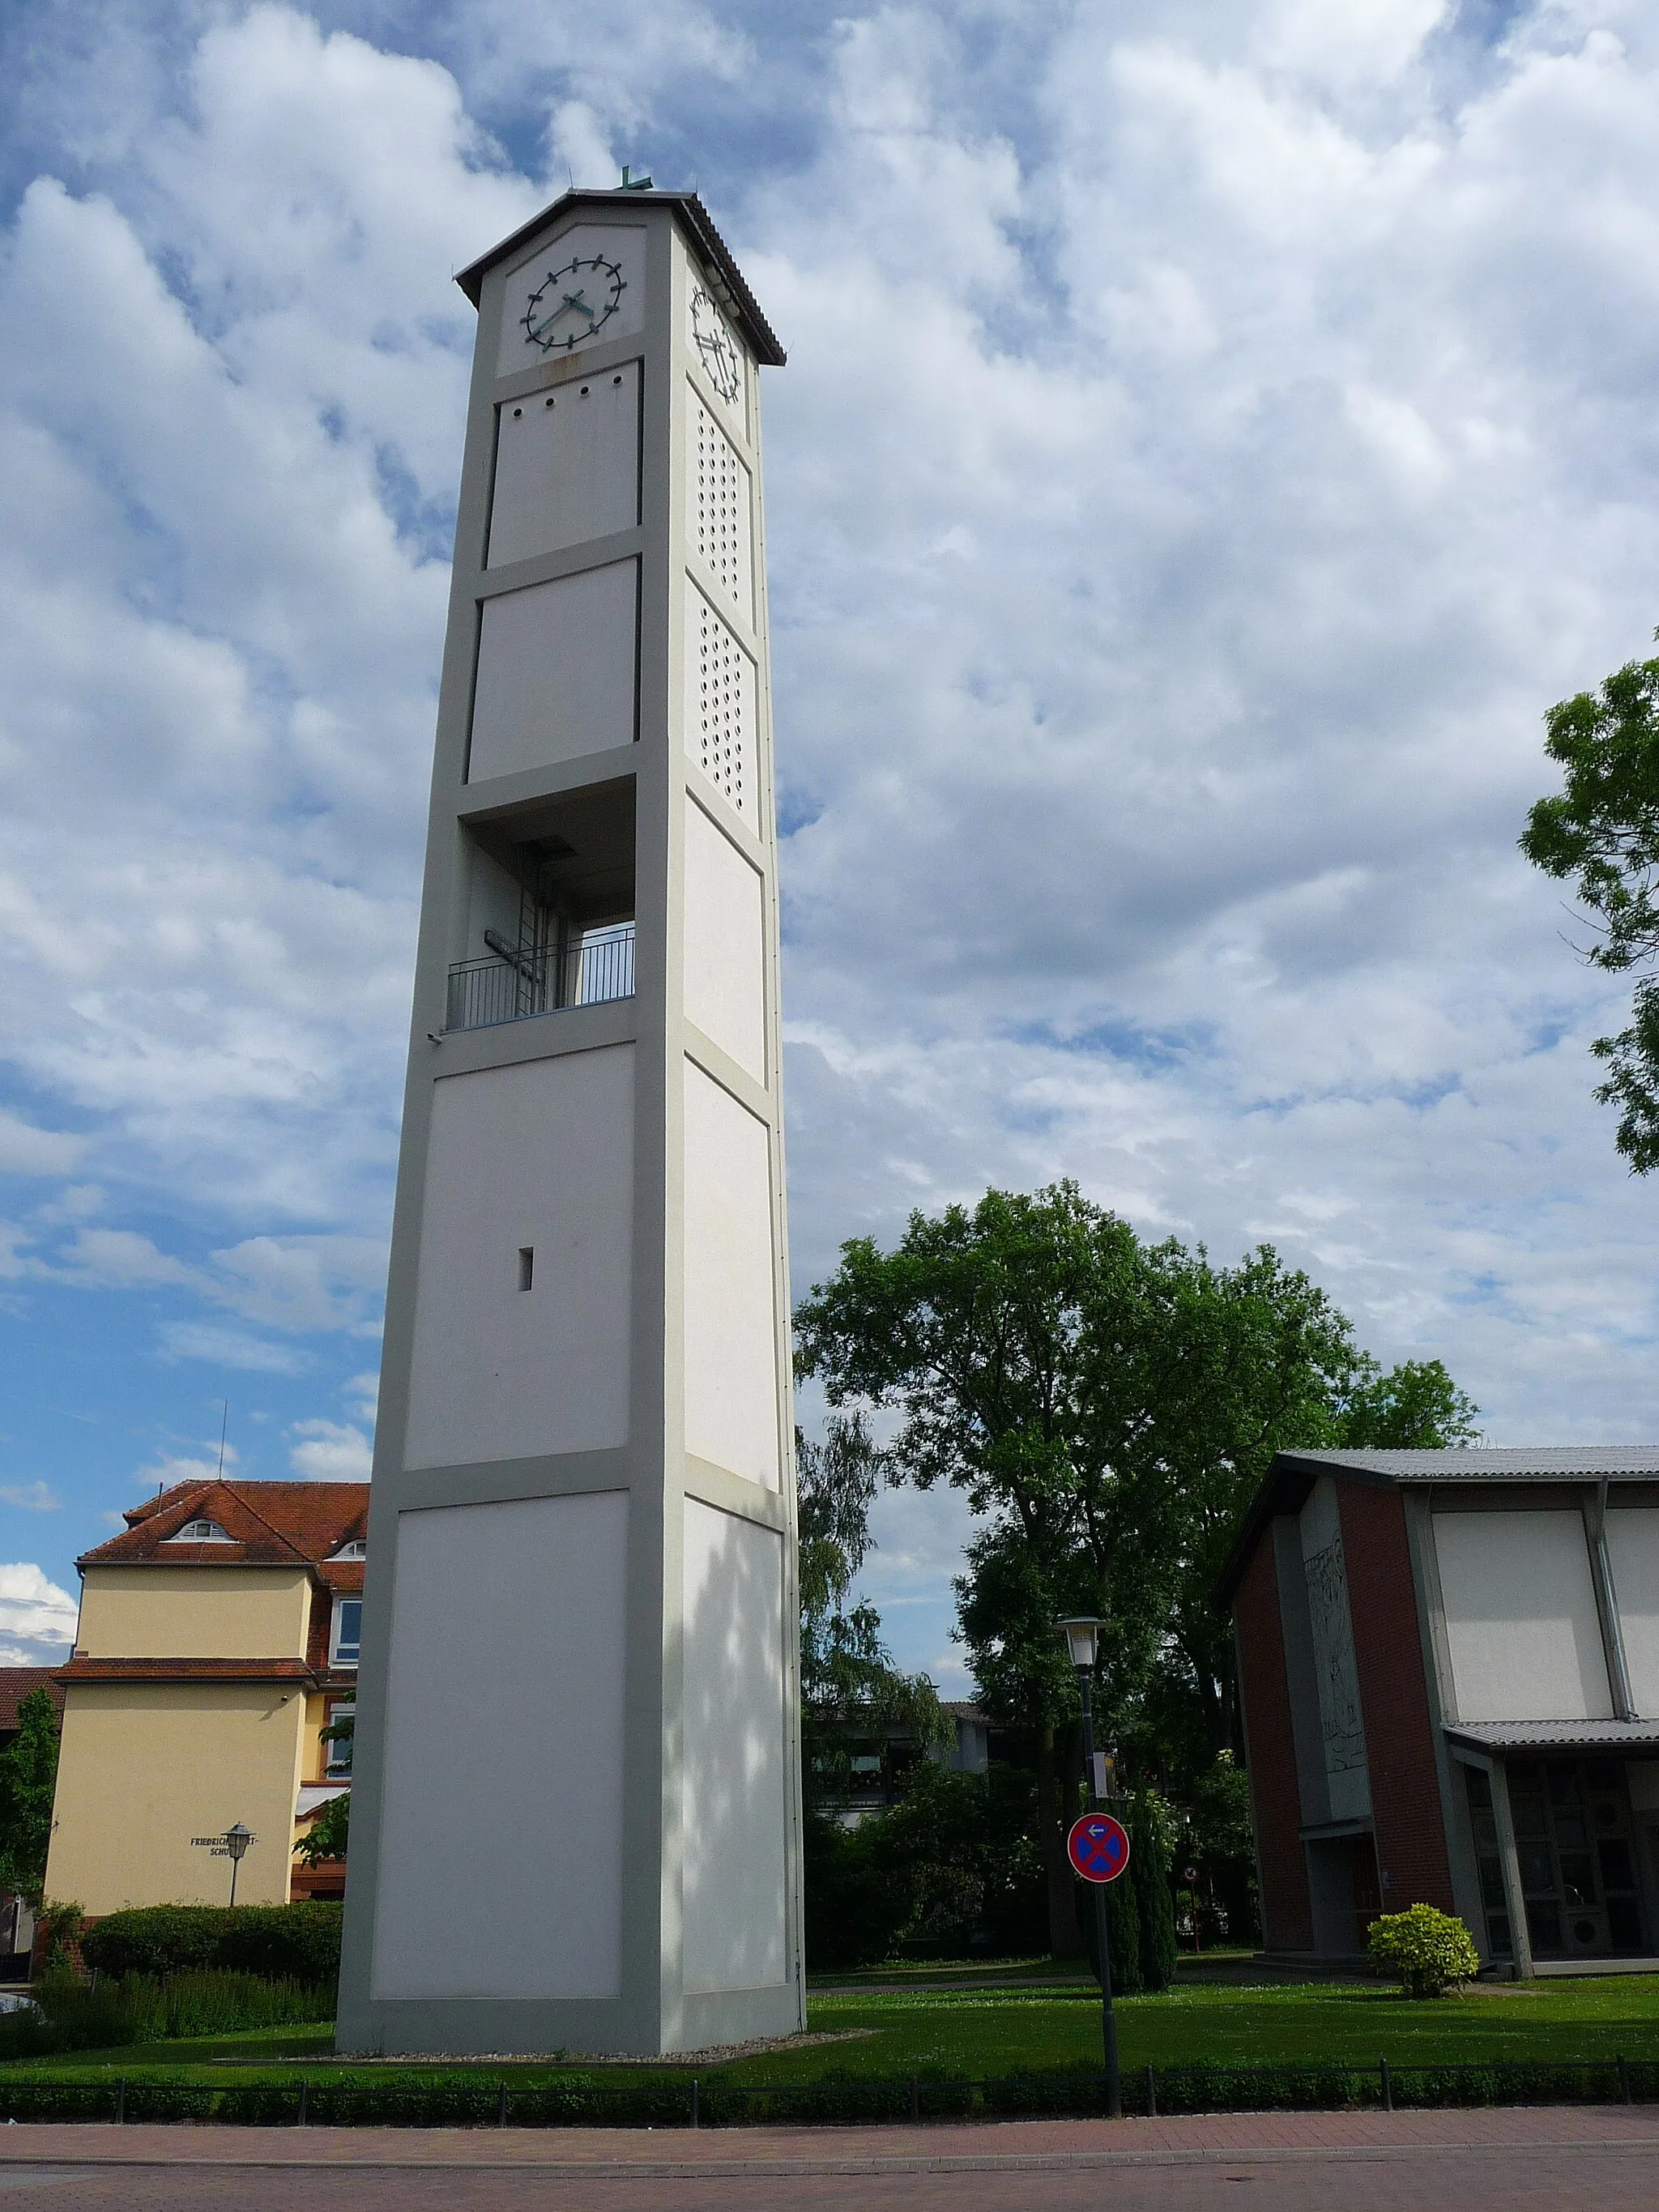 Photo showing: Freistehender Glockenturm und Teil des Kirchengebäudes der evangelischen Christuskirche in Oftersheim (Rhein-Neckar-Kreis, Deutschland), Kirche erbaut 1956/57, Höhe des Kirchturms: 29 Meter